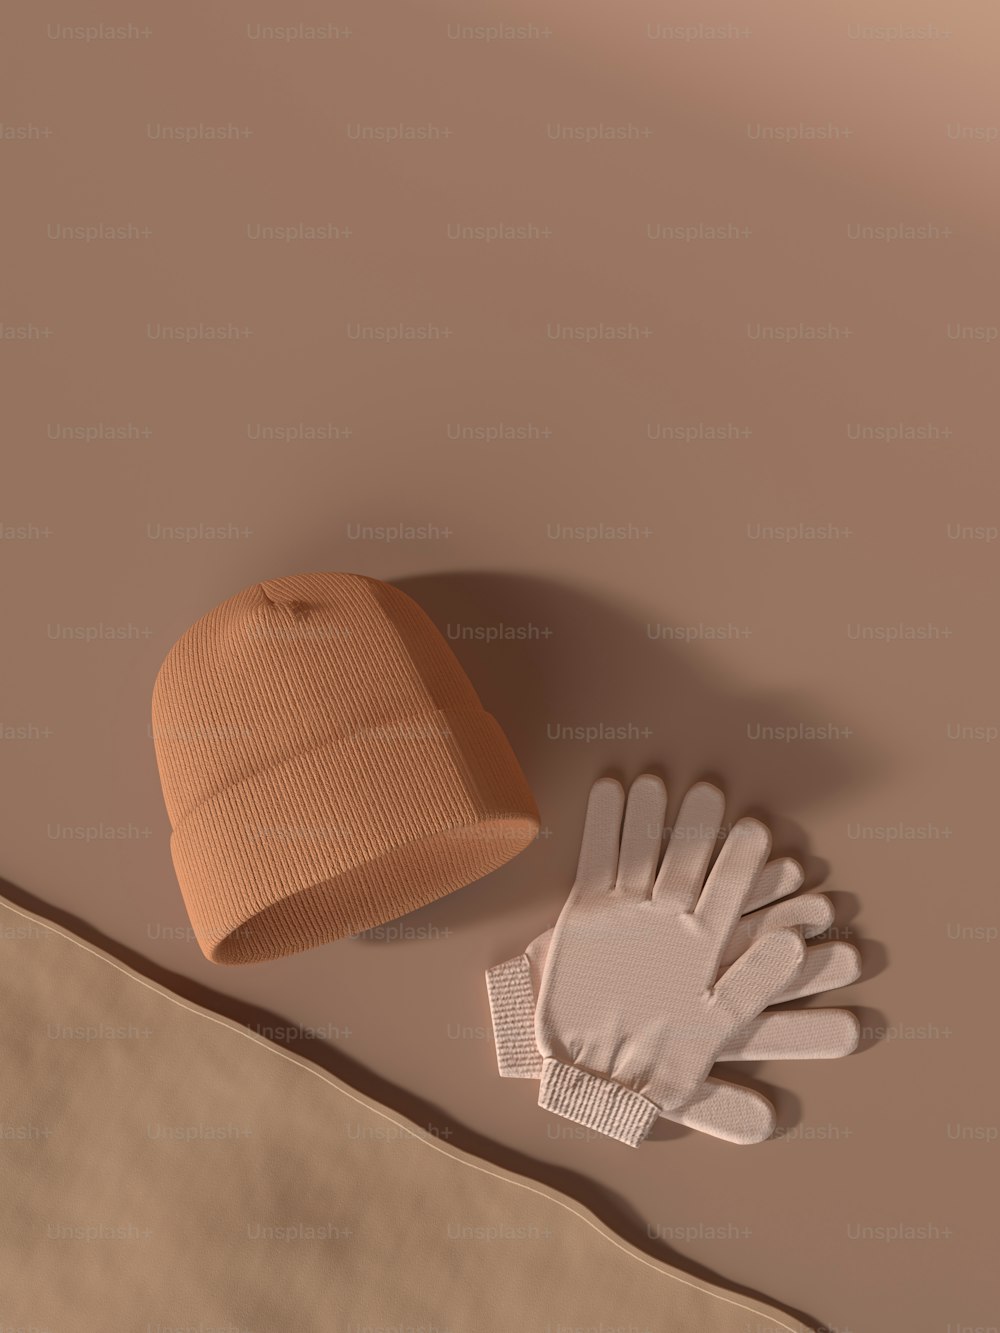 테이블 위의 장갑과 모자